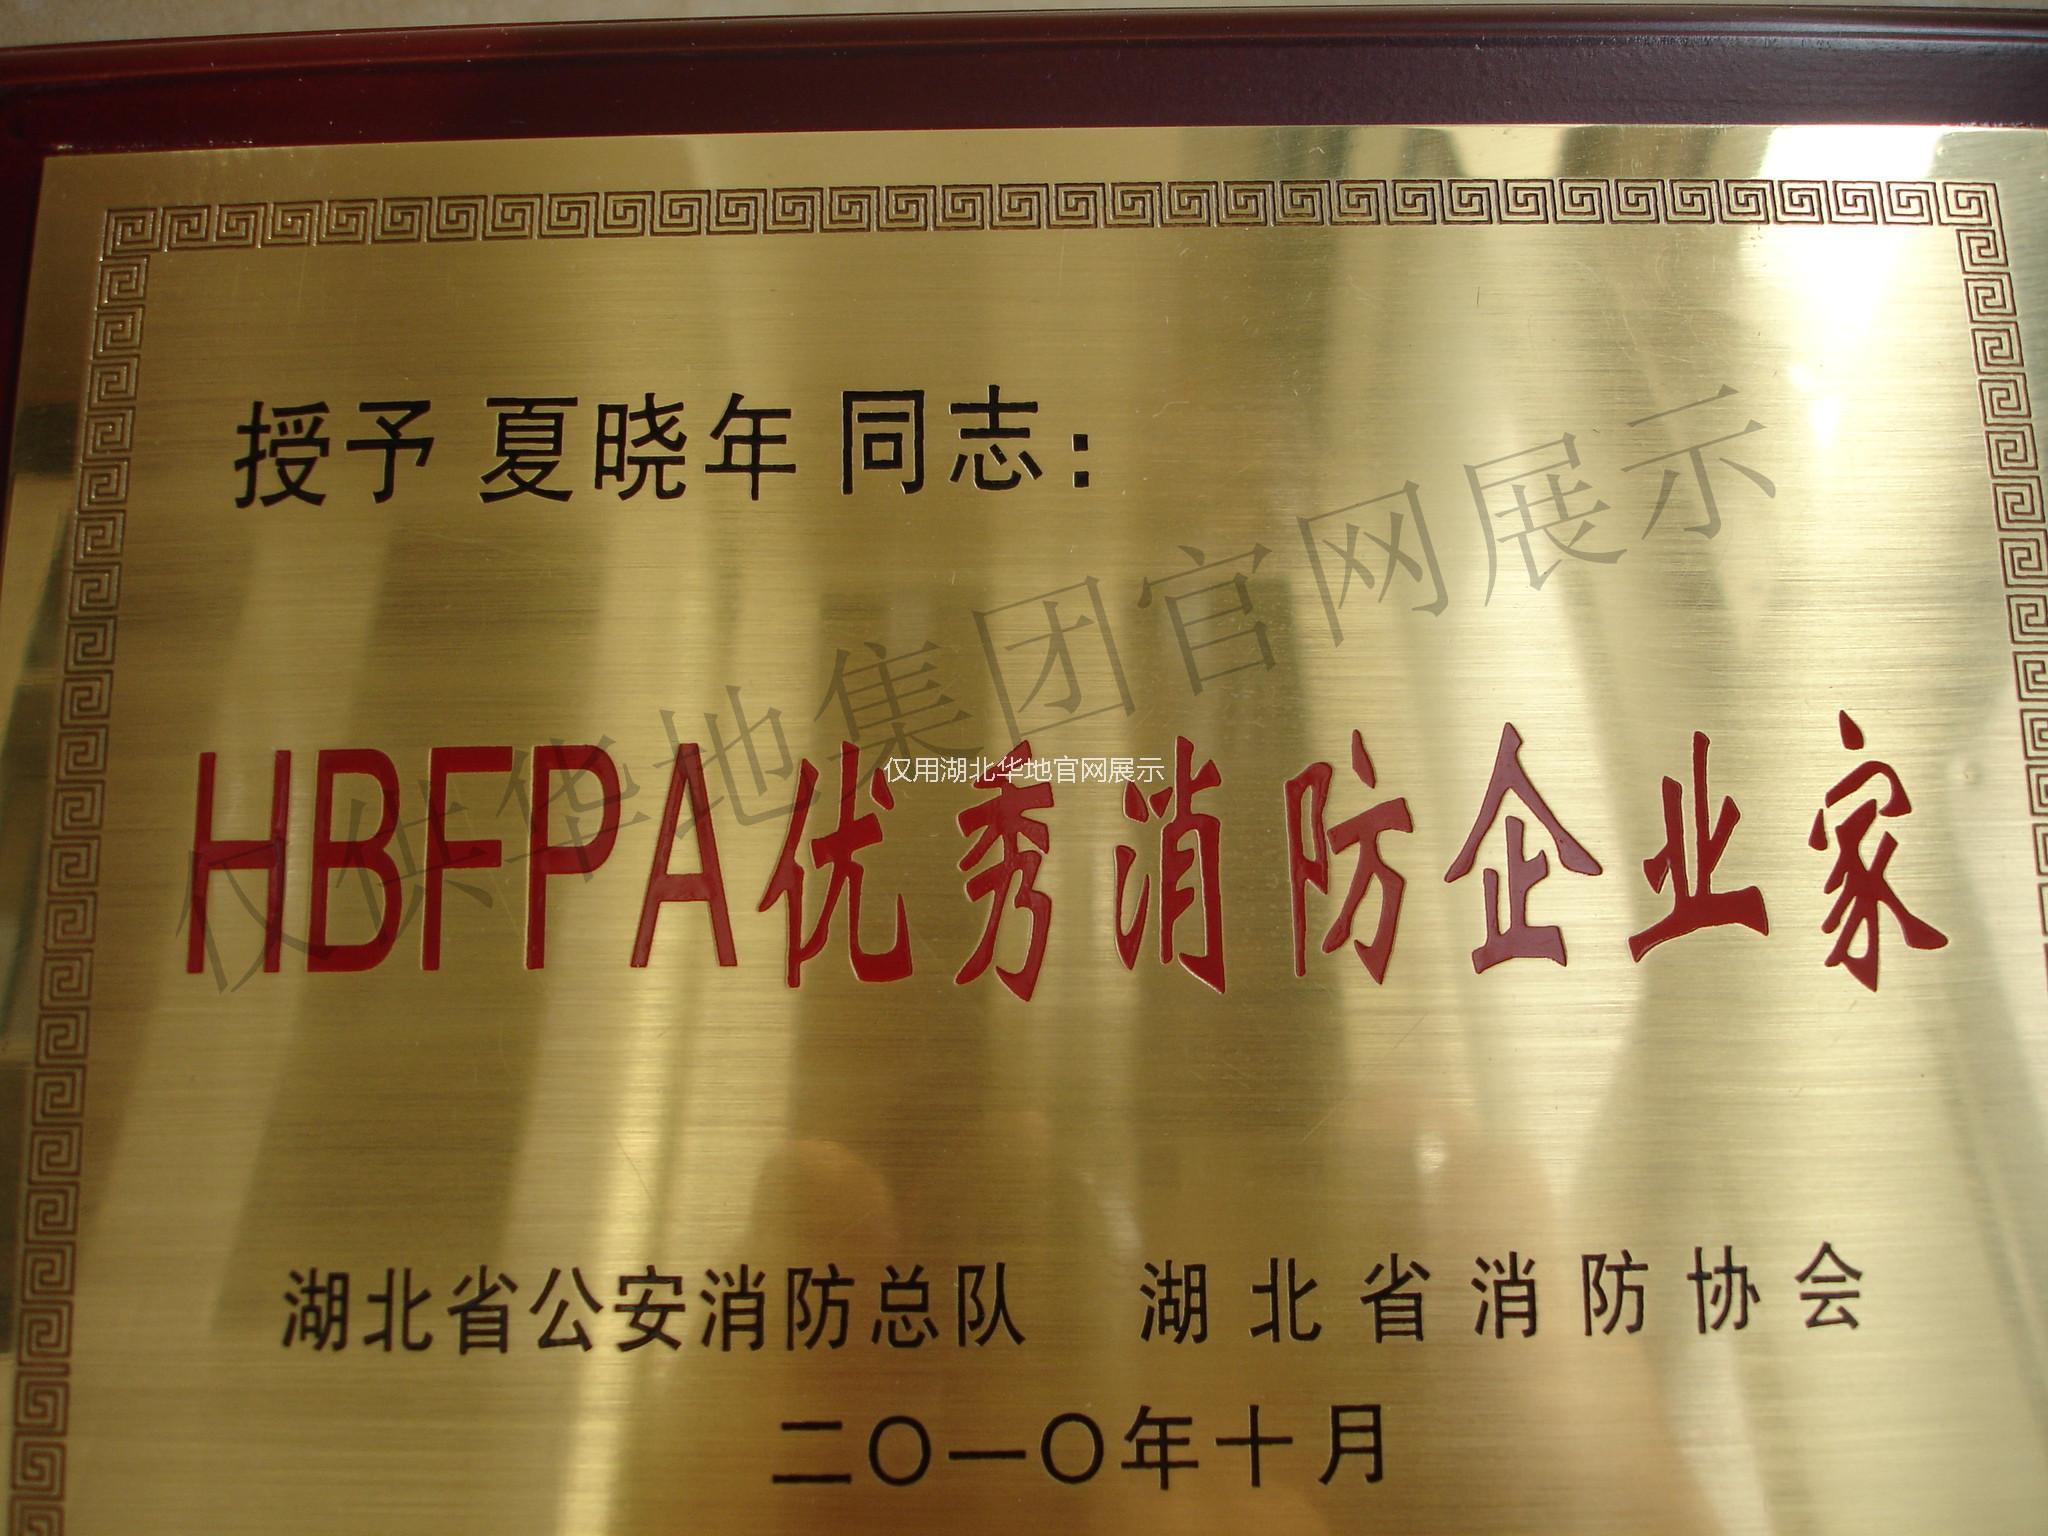  HBFPA优秀消防企业家